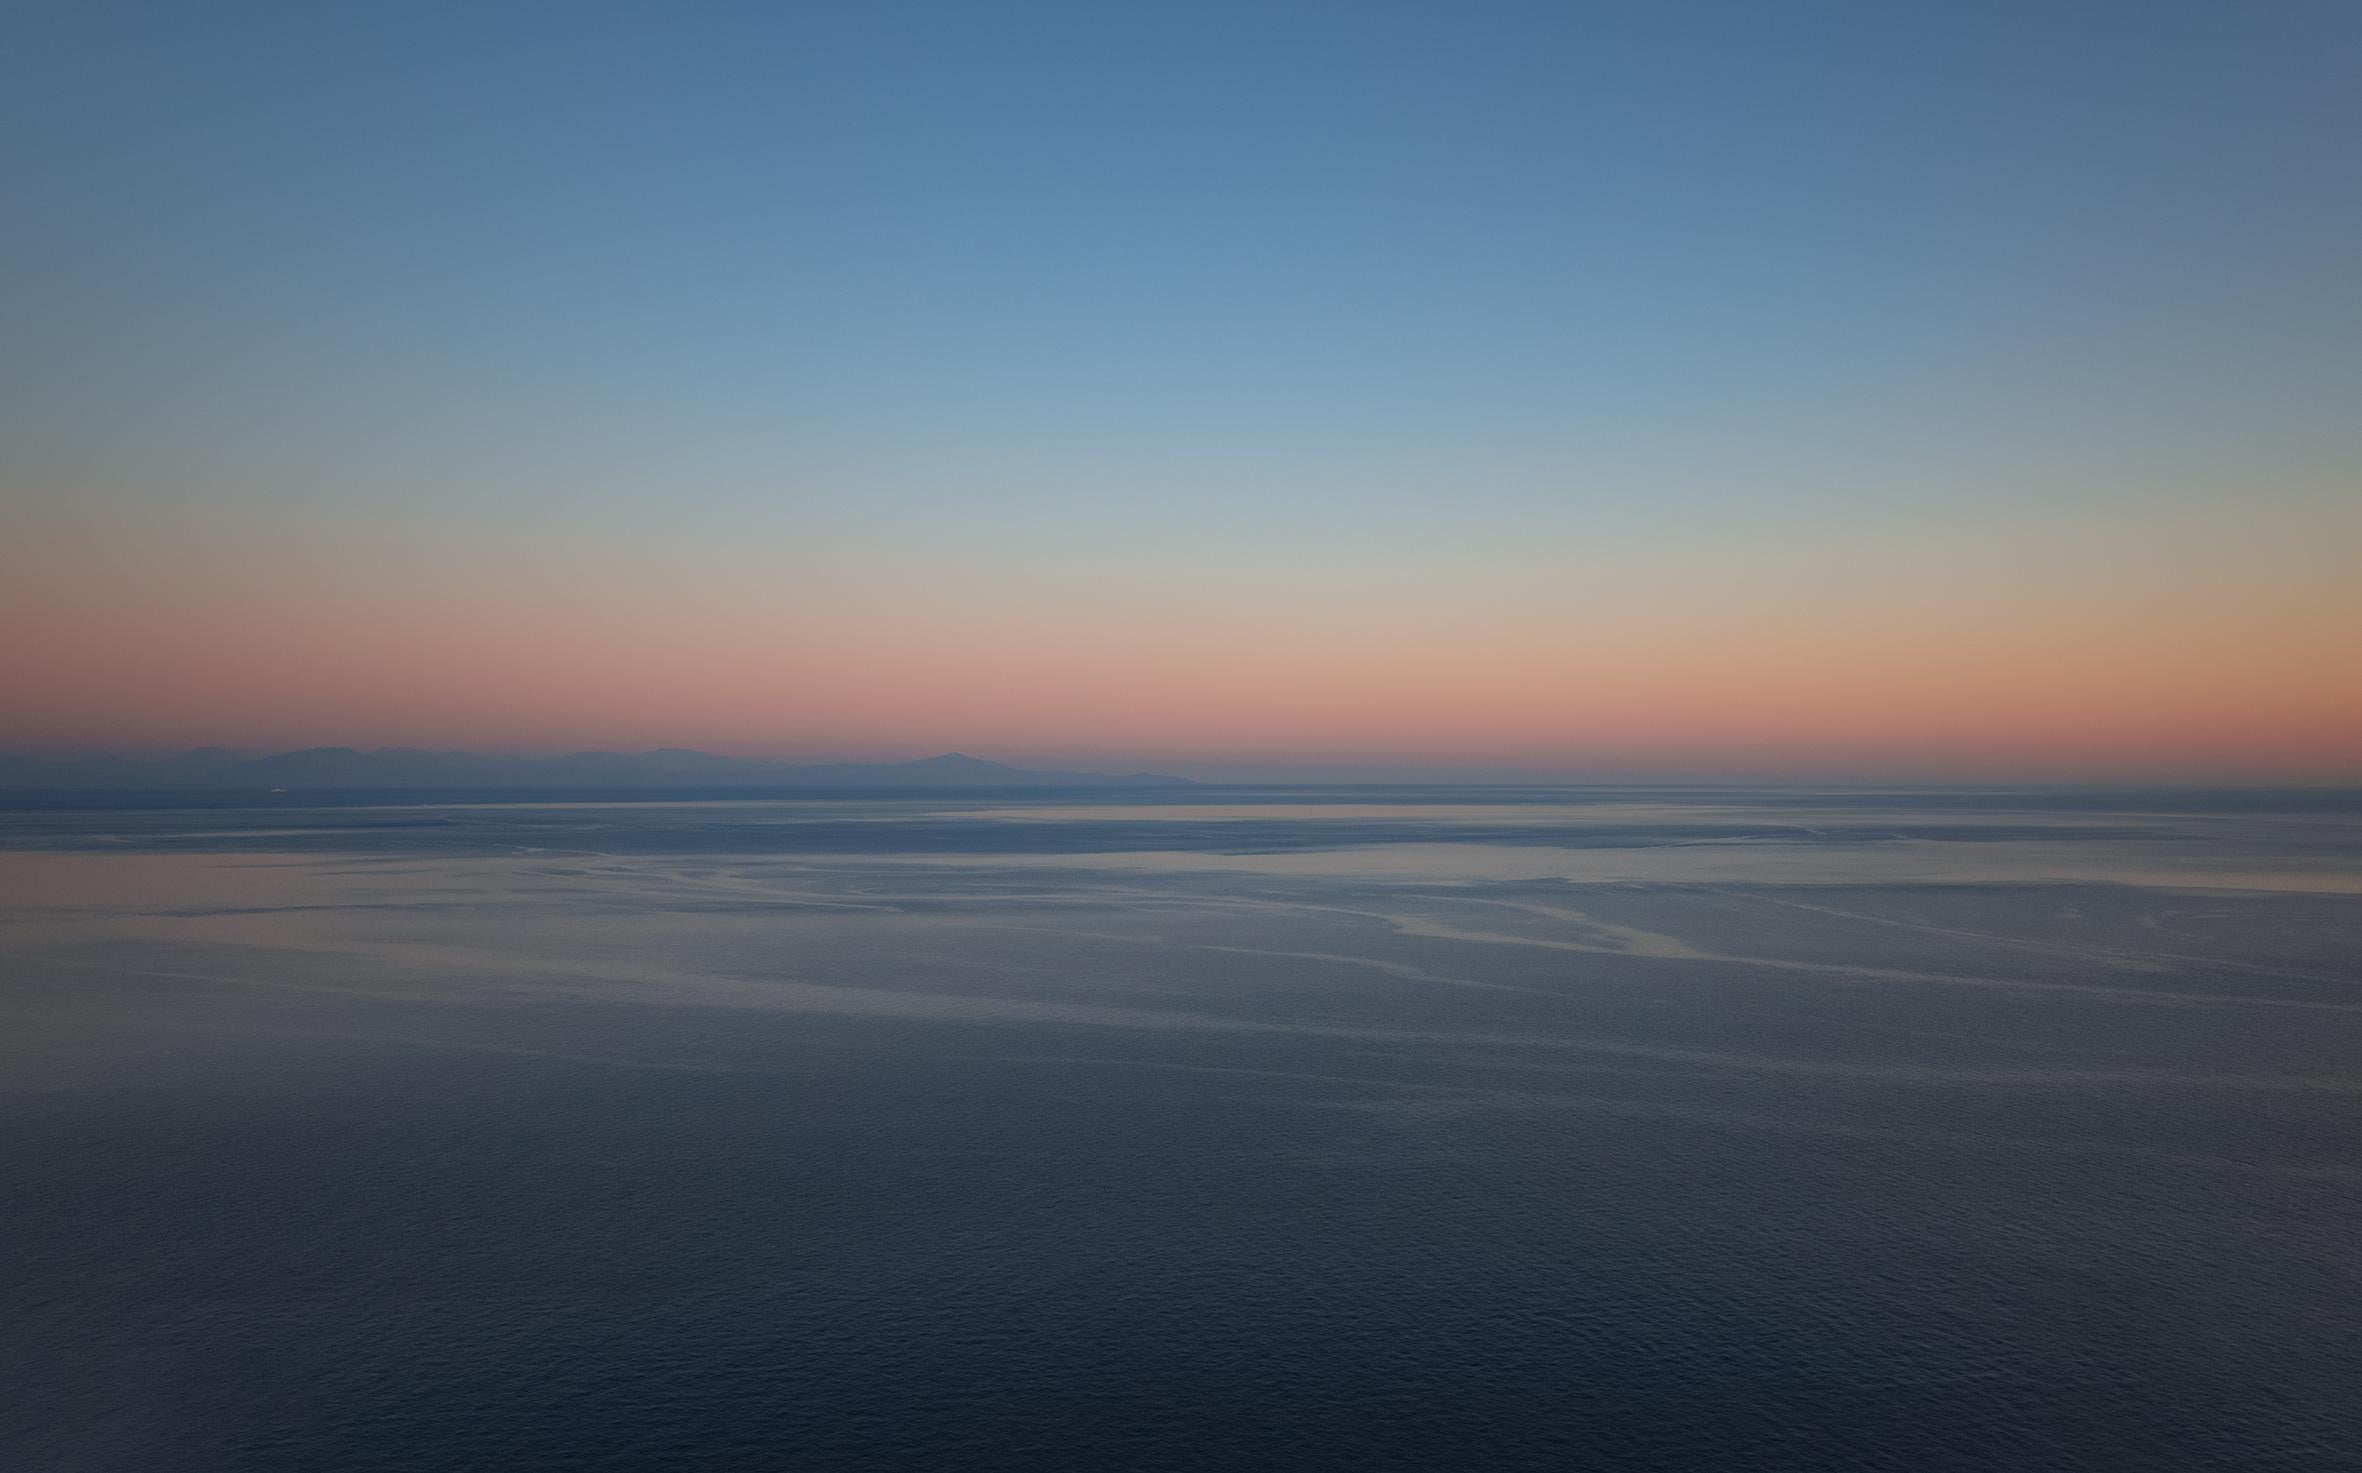 Ugne Pouwell Landscape Photograph – Amalfi- Horizont – Italienische Küste, Meer bei Sonnenuntergang, limitierte Auflage 5 Stück